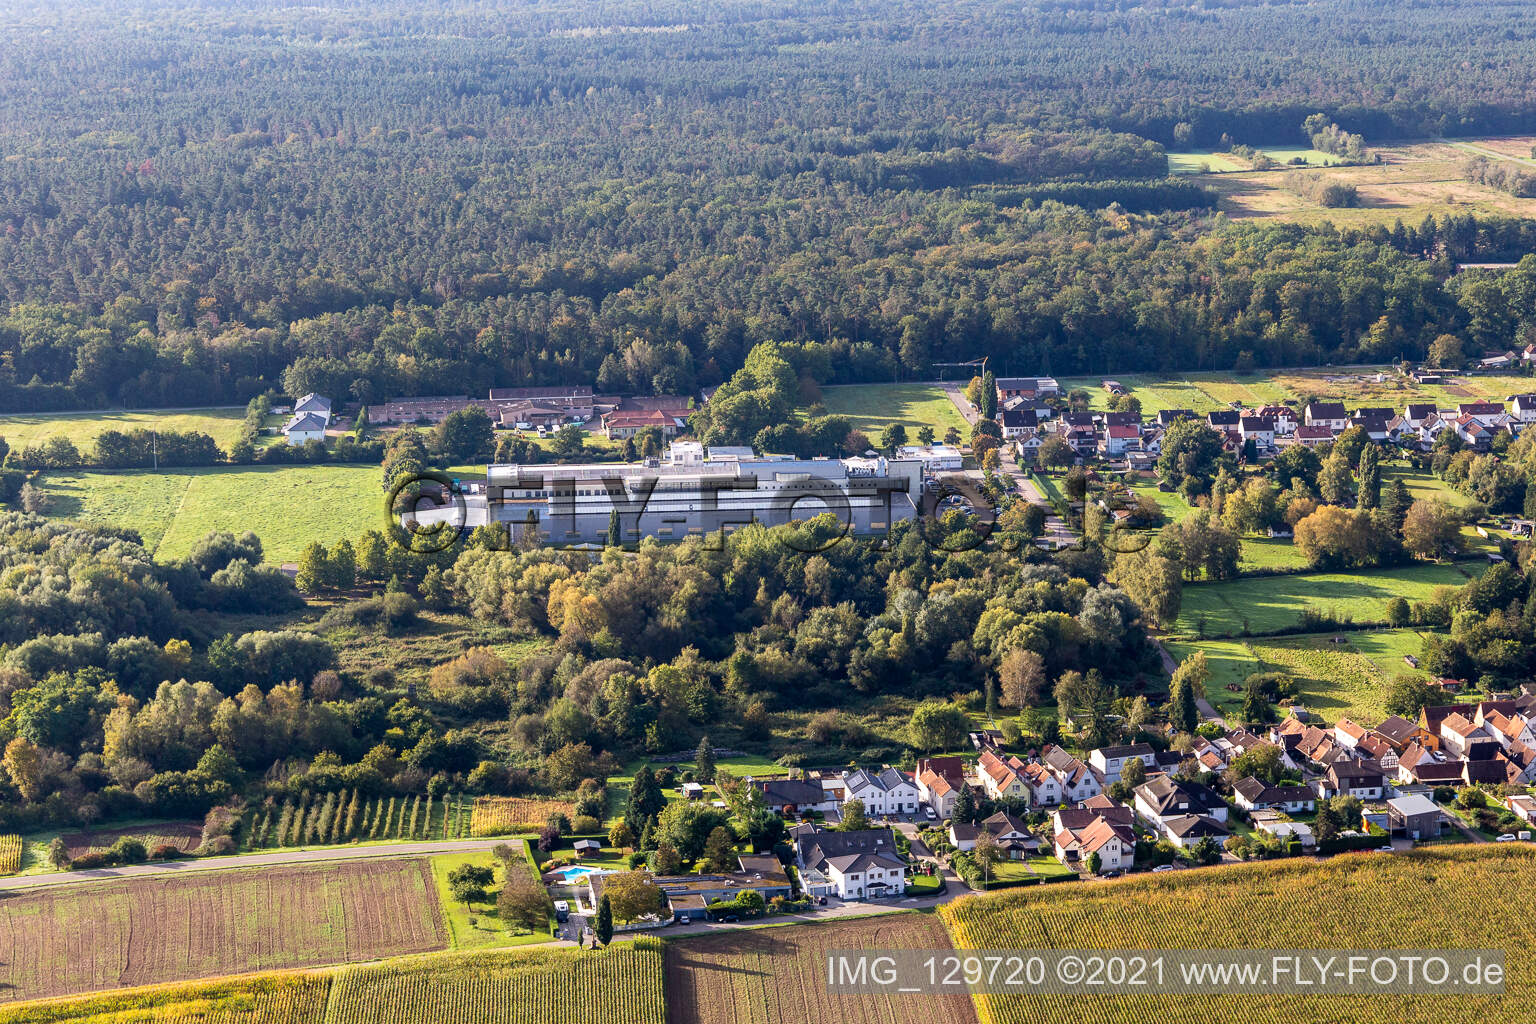 Luftaufnahme von Webasto Mechatronics im Ortsteil Schaidt in Wörth am Rhein im Bundesland Rheinland-Pfalz, Deutschland